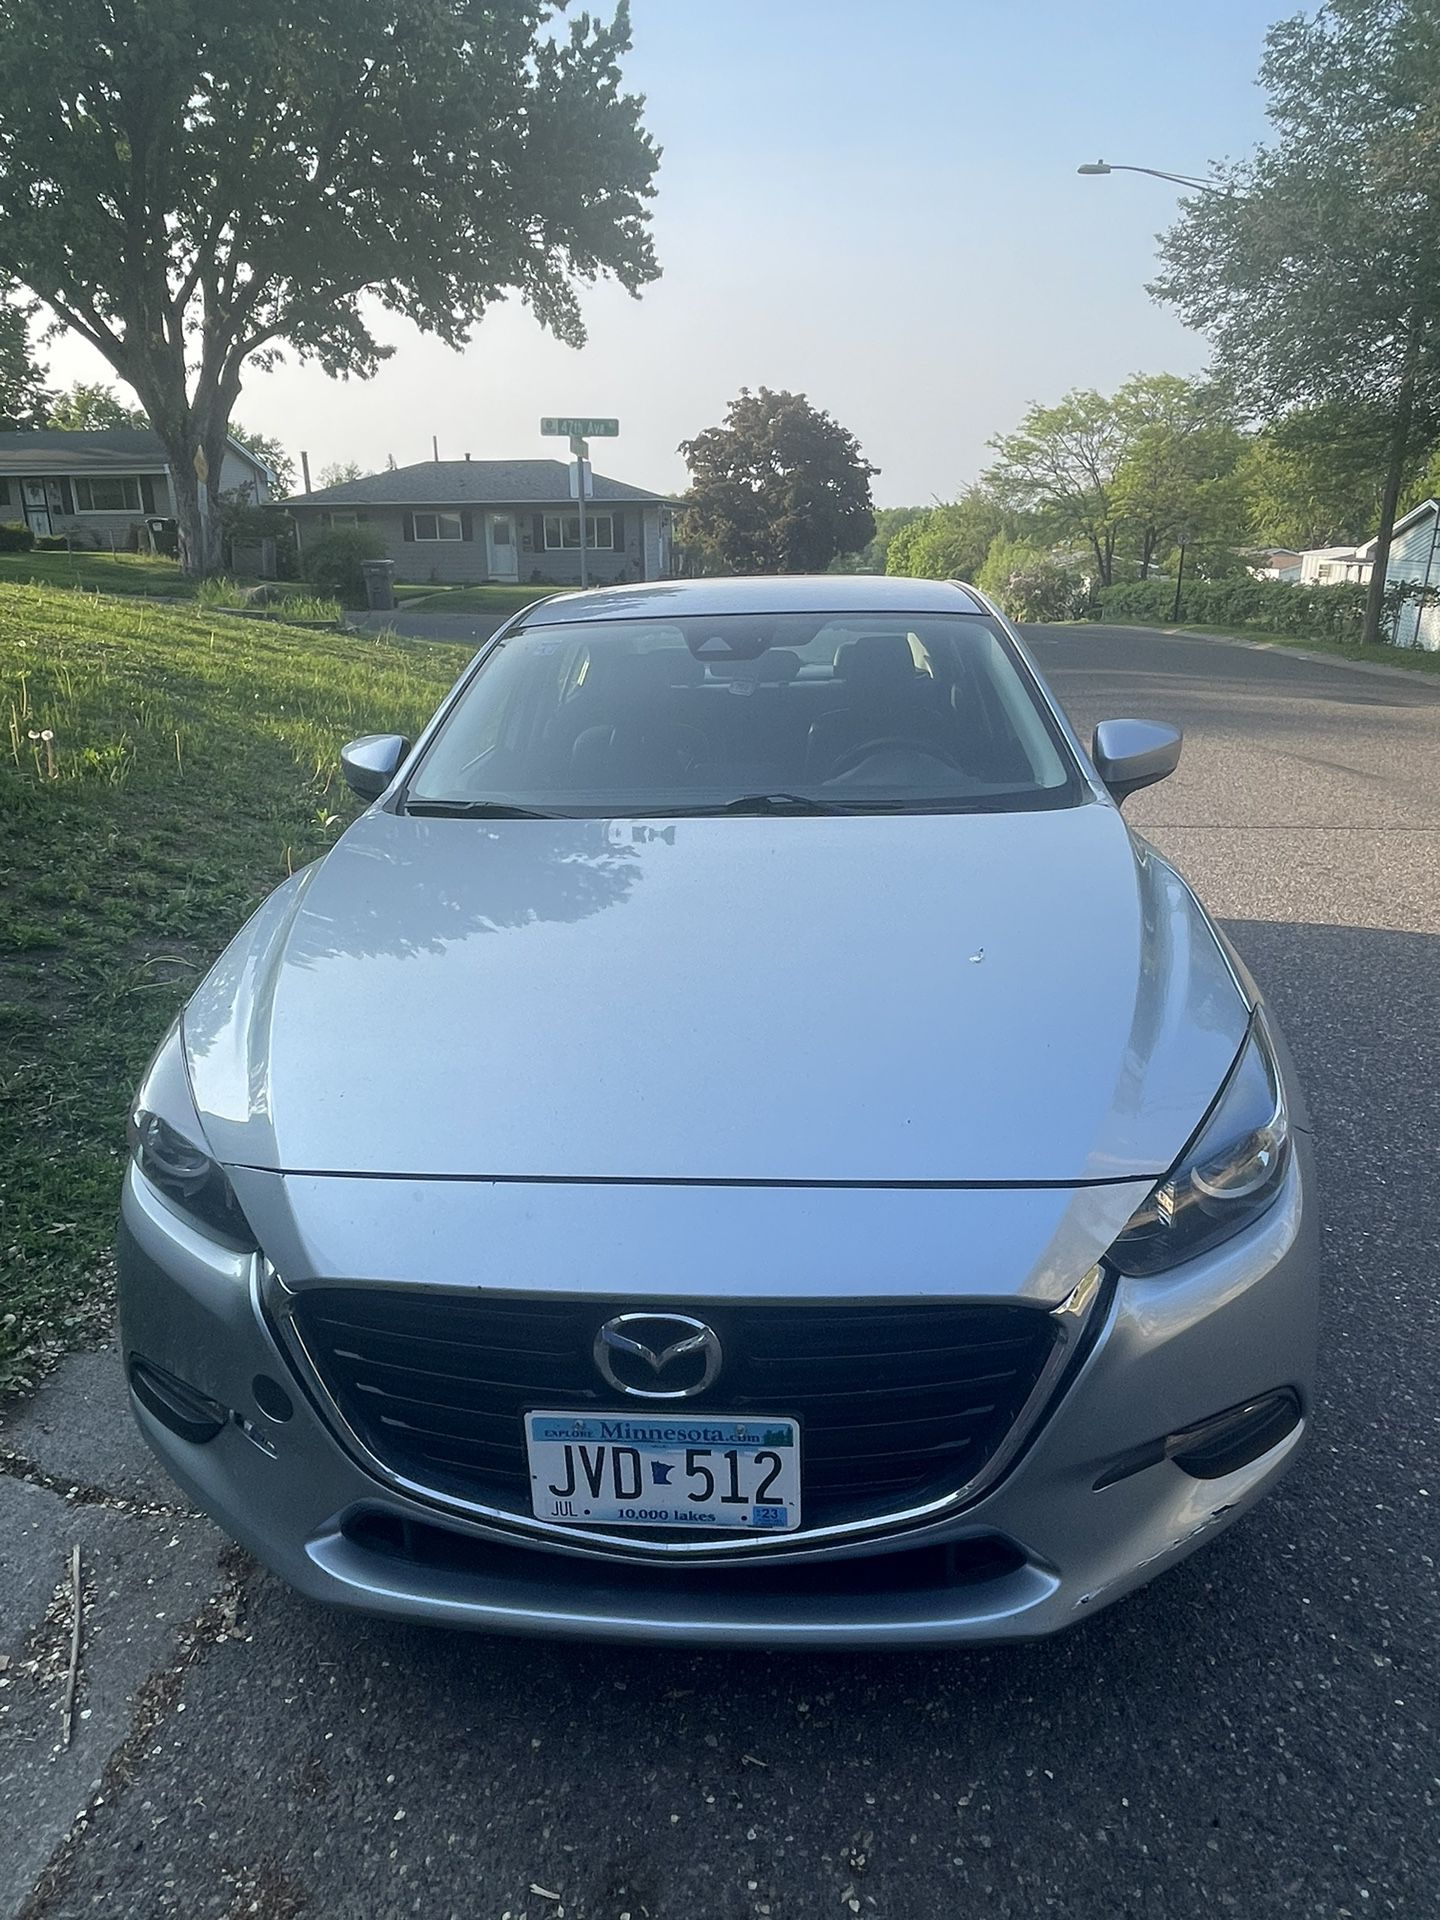 2017 Mazda Mazda3